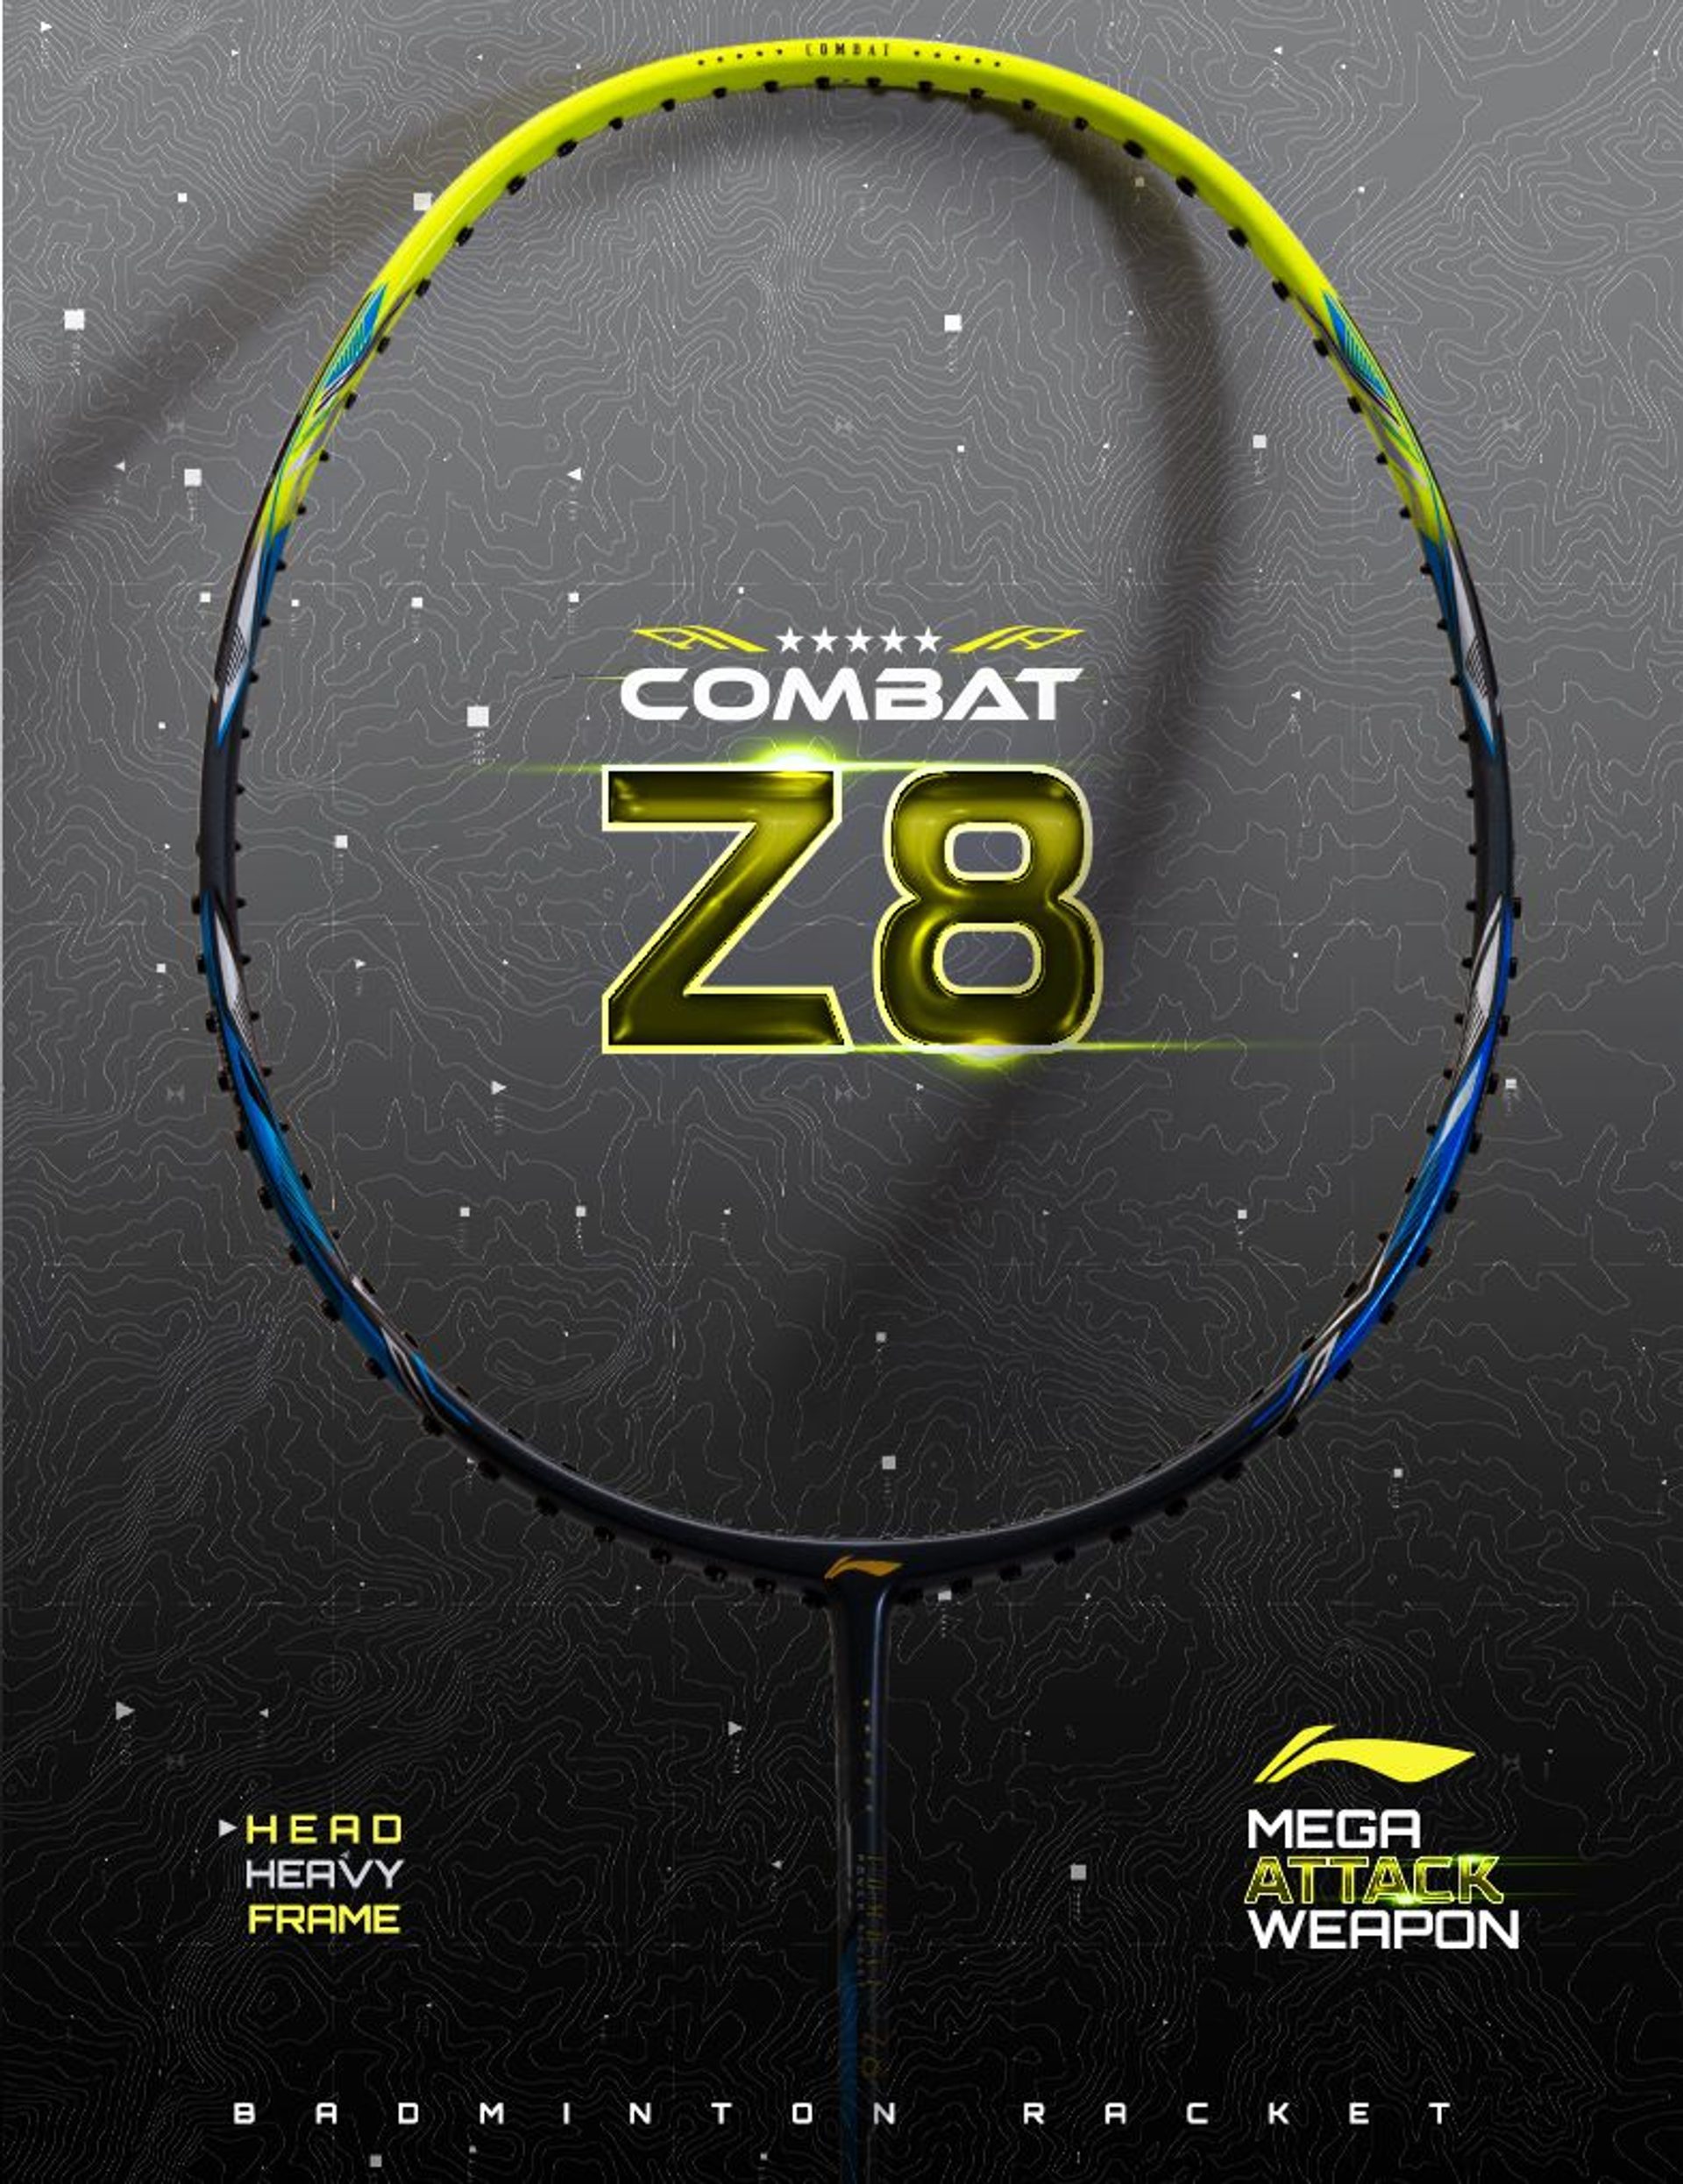 Combat Z8 Badminton Racket